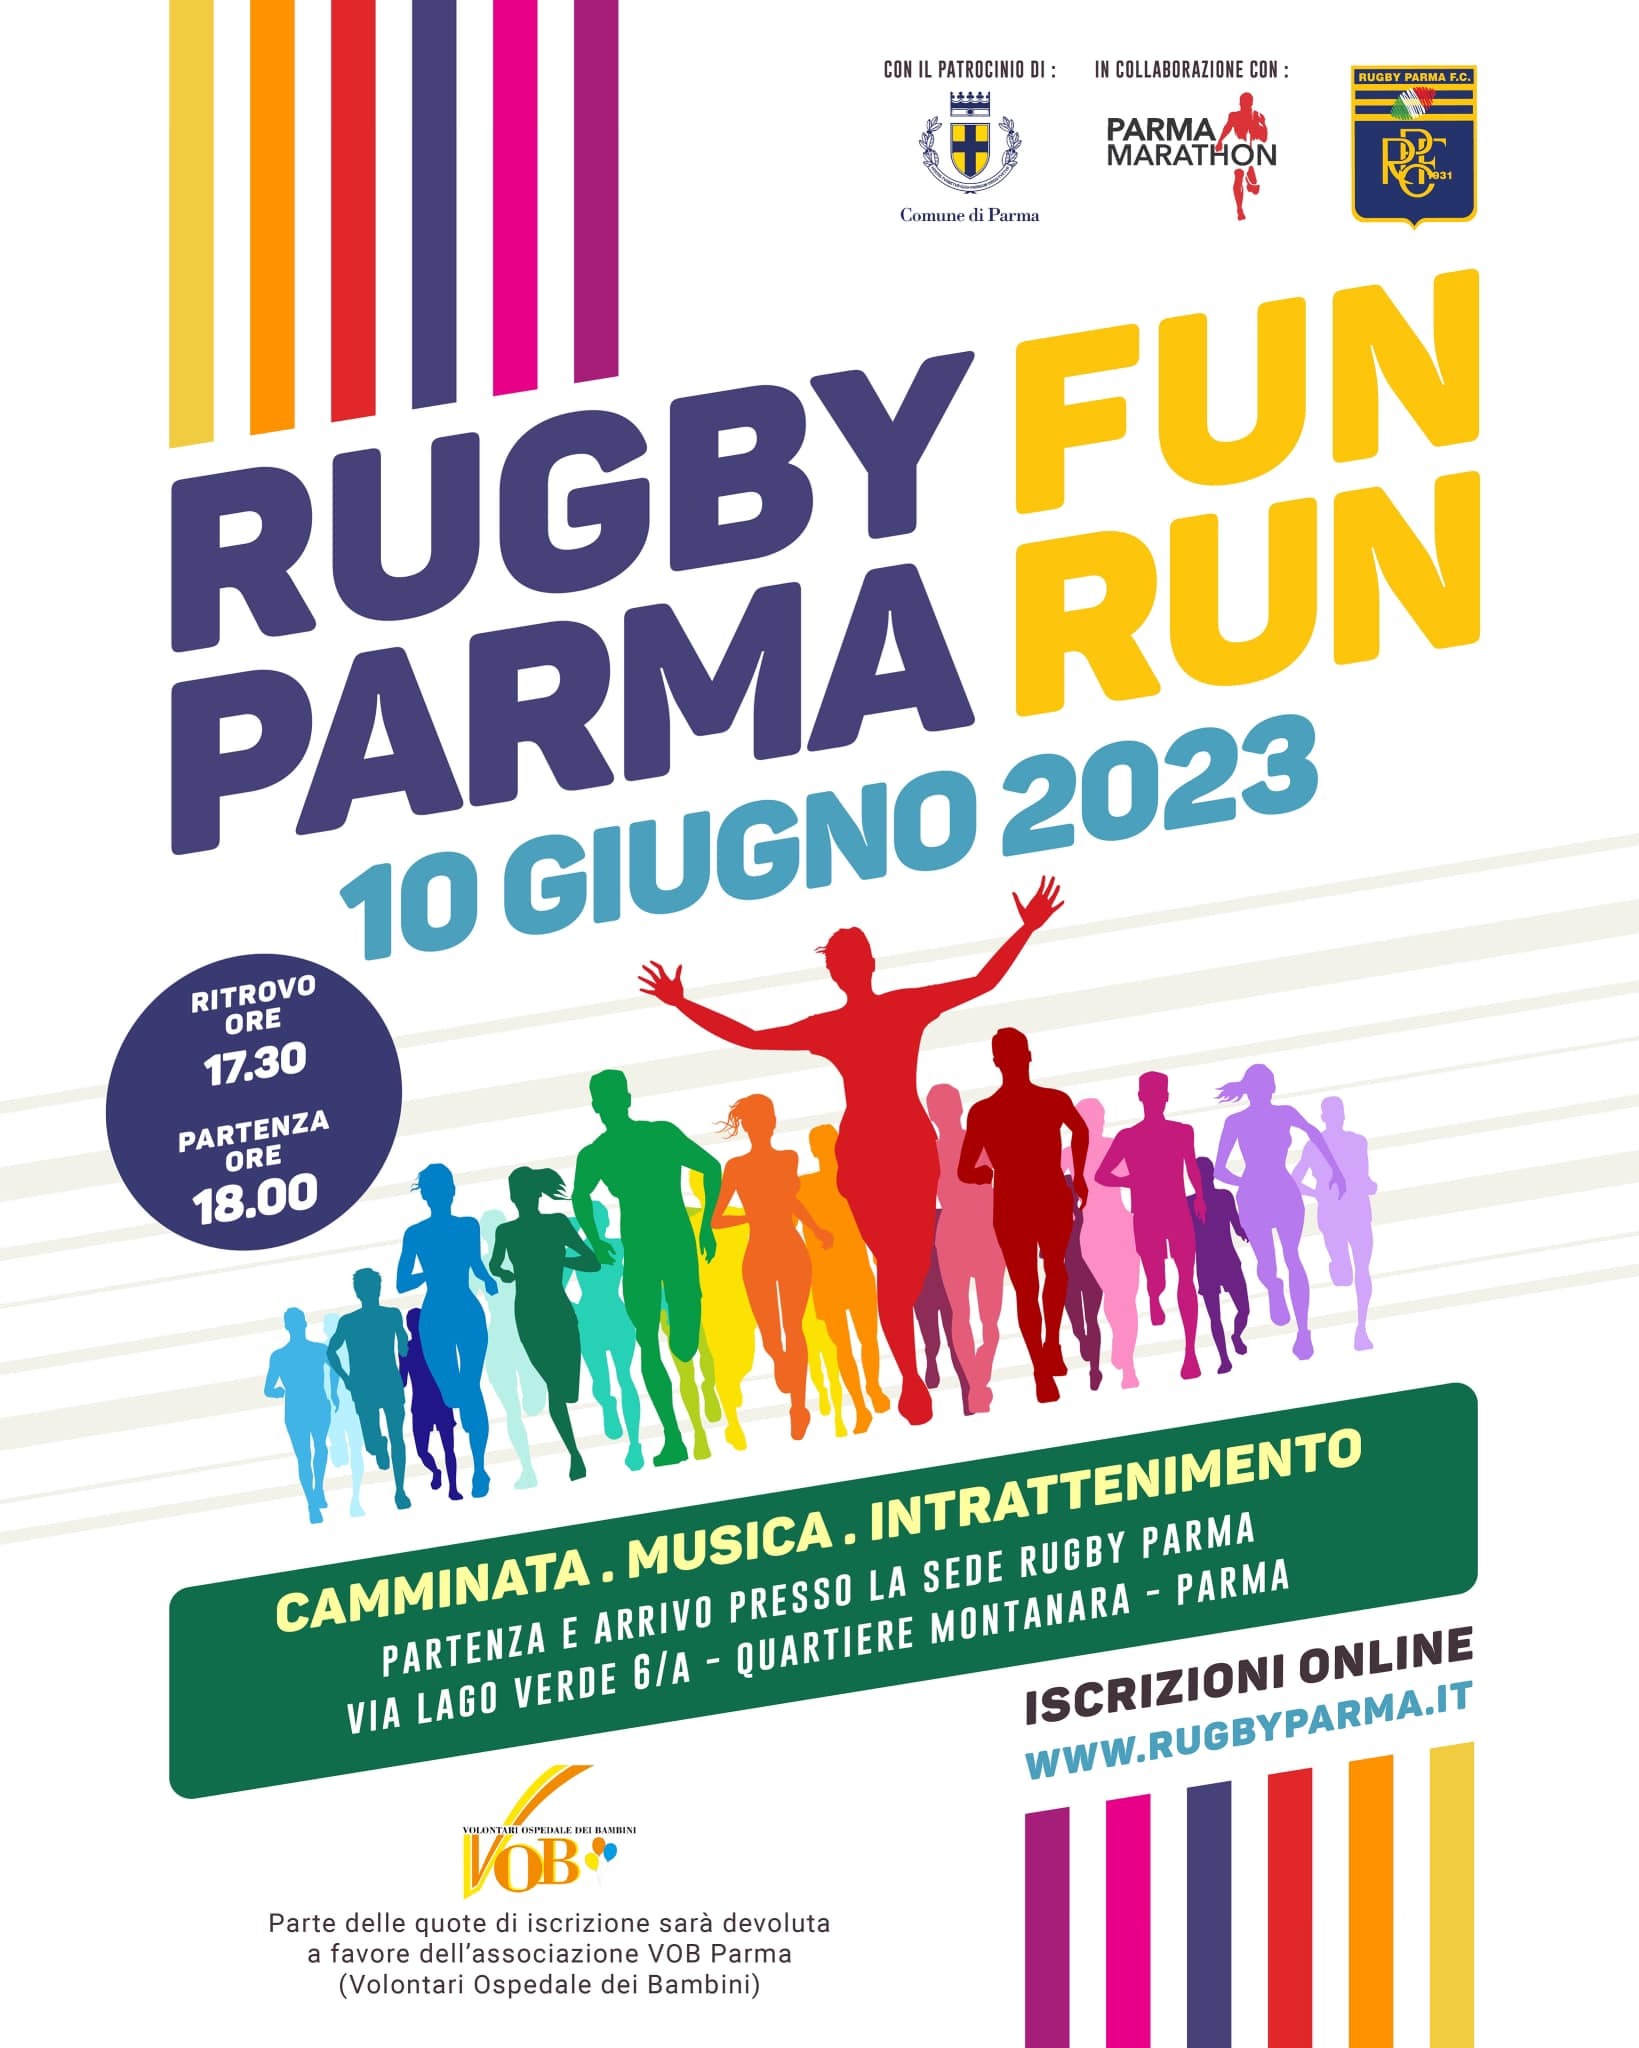 Rugby Parma Fun Run, la camminata che unisce divertimento e solidarietà